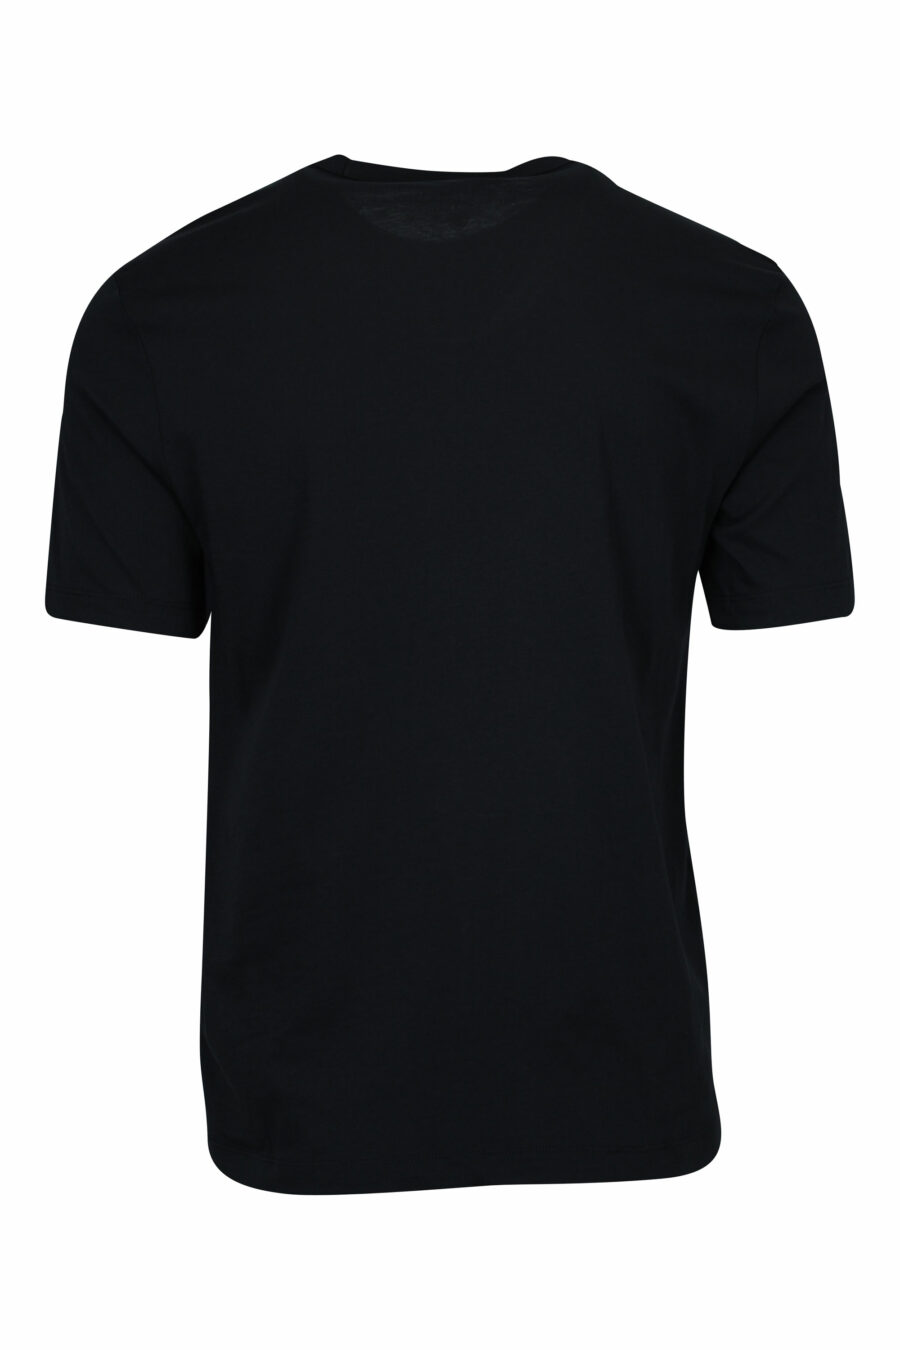 Camiseta negra con maxilogo monocromático centro - 8058610799021 1